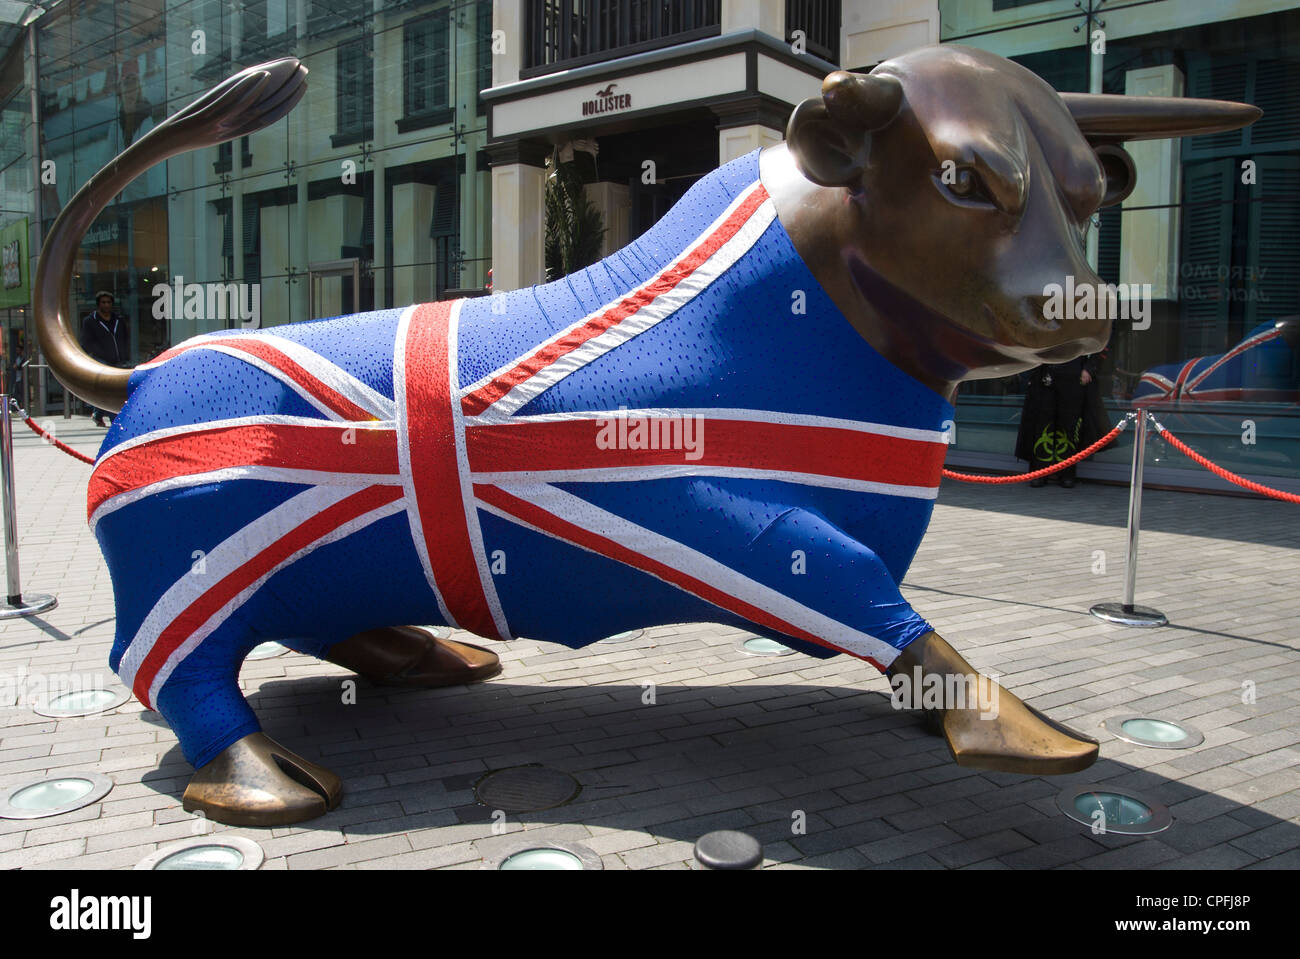 La statue de Bull dans le centre commercial Bullring, Birmingham, vêtue d'un Union Jack costume pour le Queens célébrations jubilaires. Banque D'Images